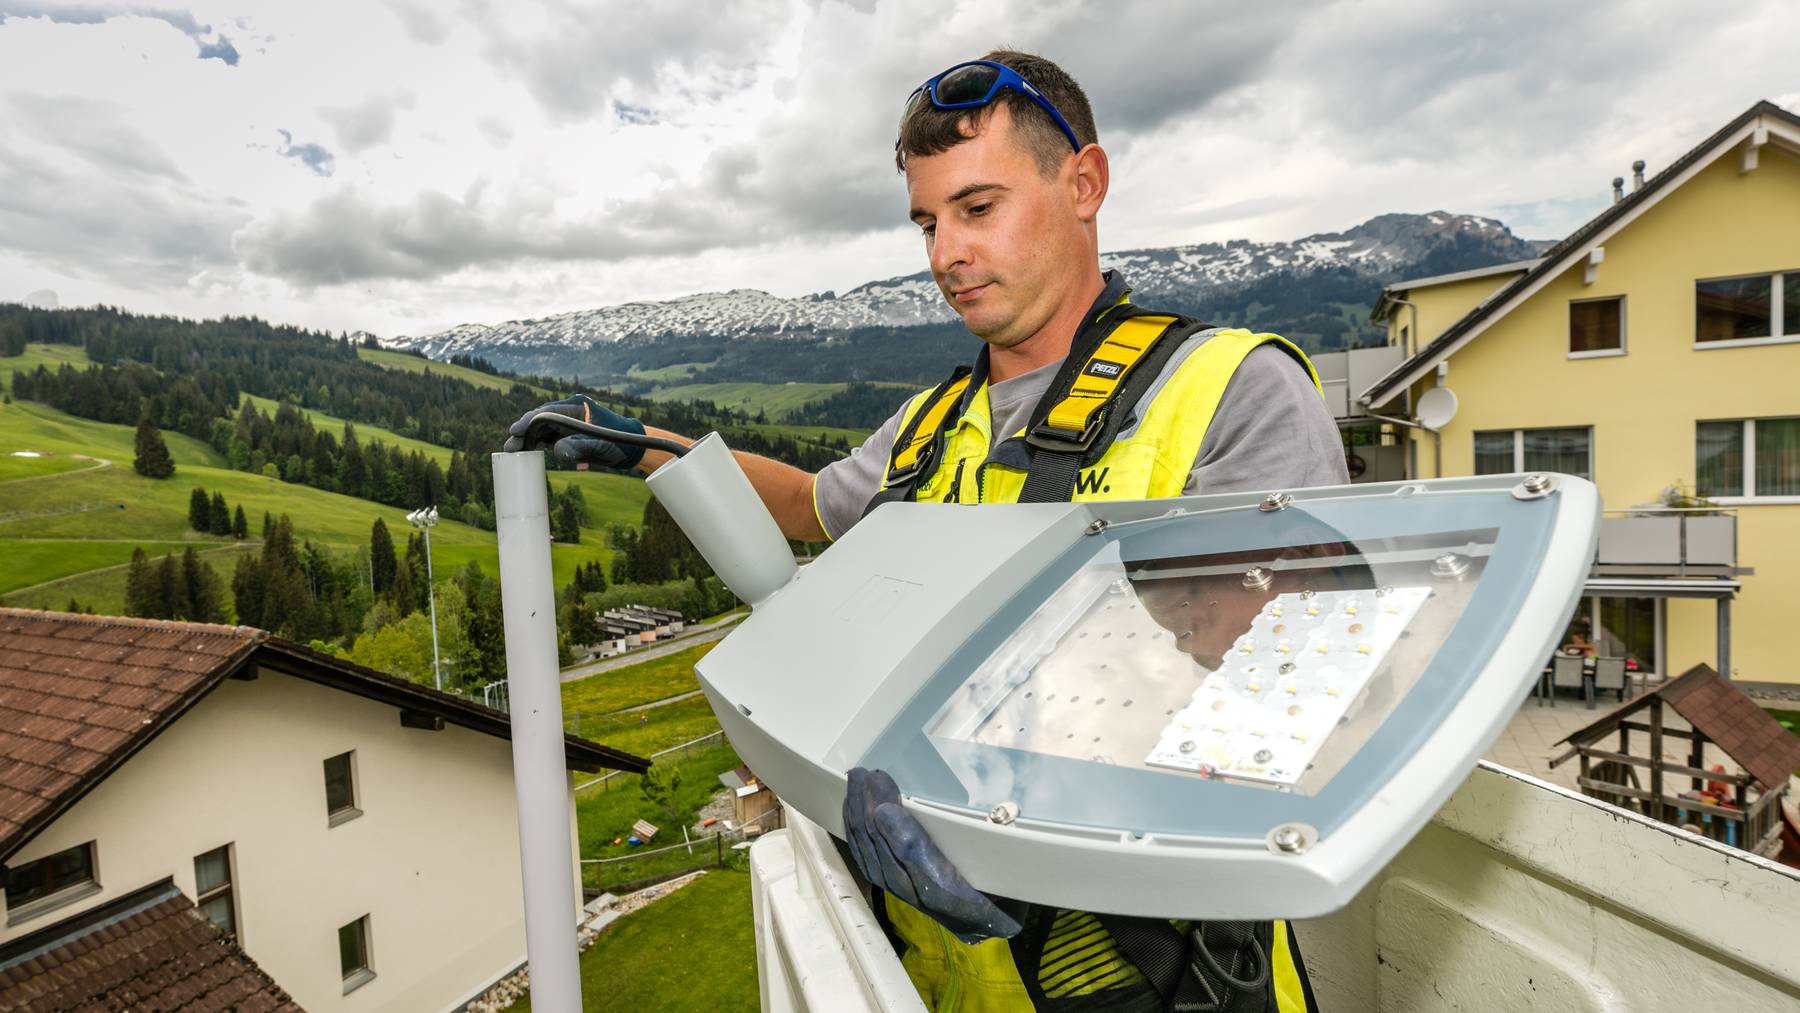 In der Zentralschweiz lauern einige spannende Ideen, wie man die Region umweltfreundlicher machen könnte.